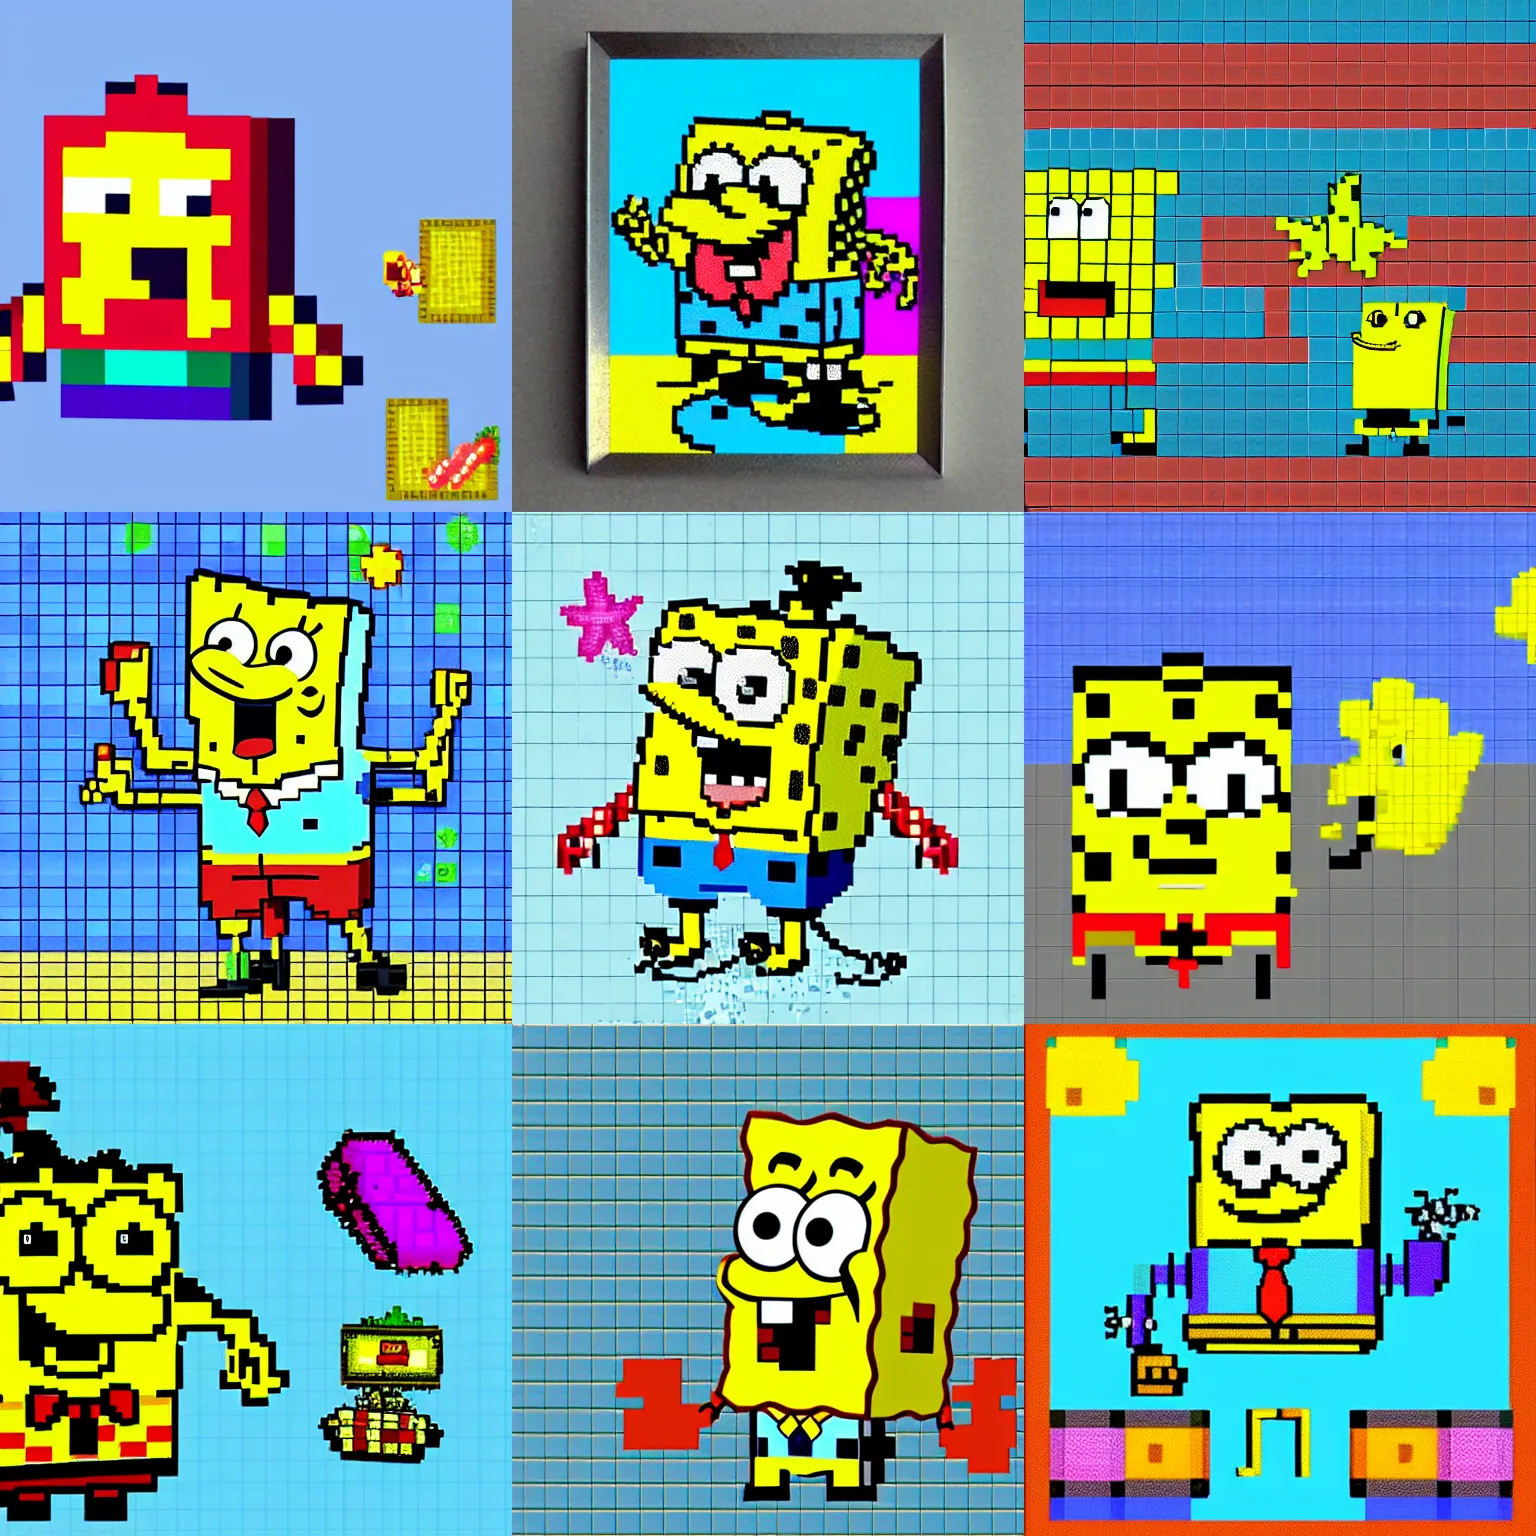 Prompt: spongebob, colorful, pixel art, 1 6 bits, 2 d